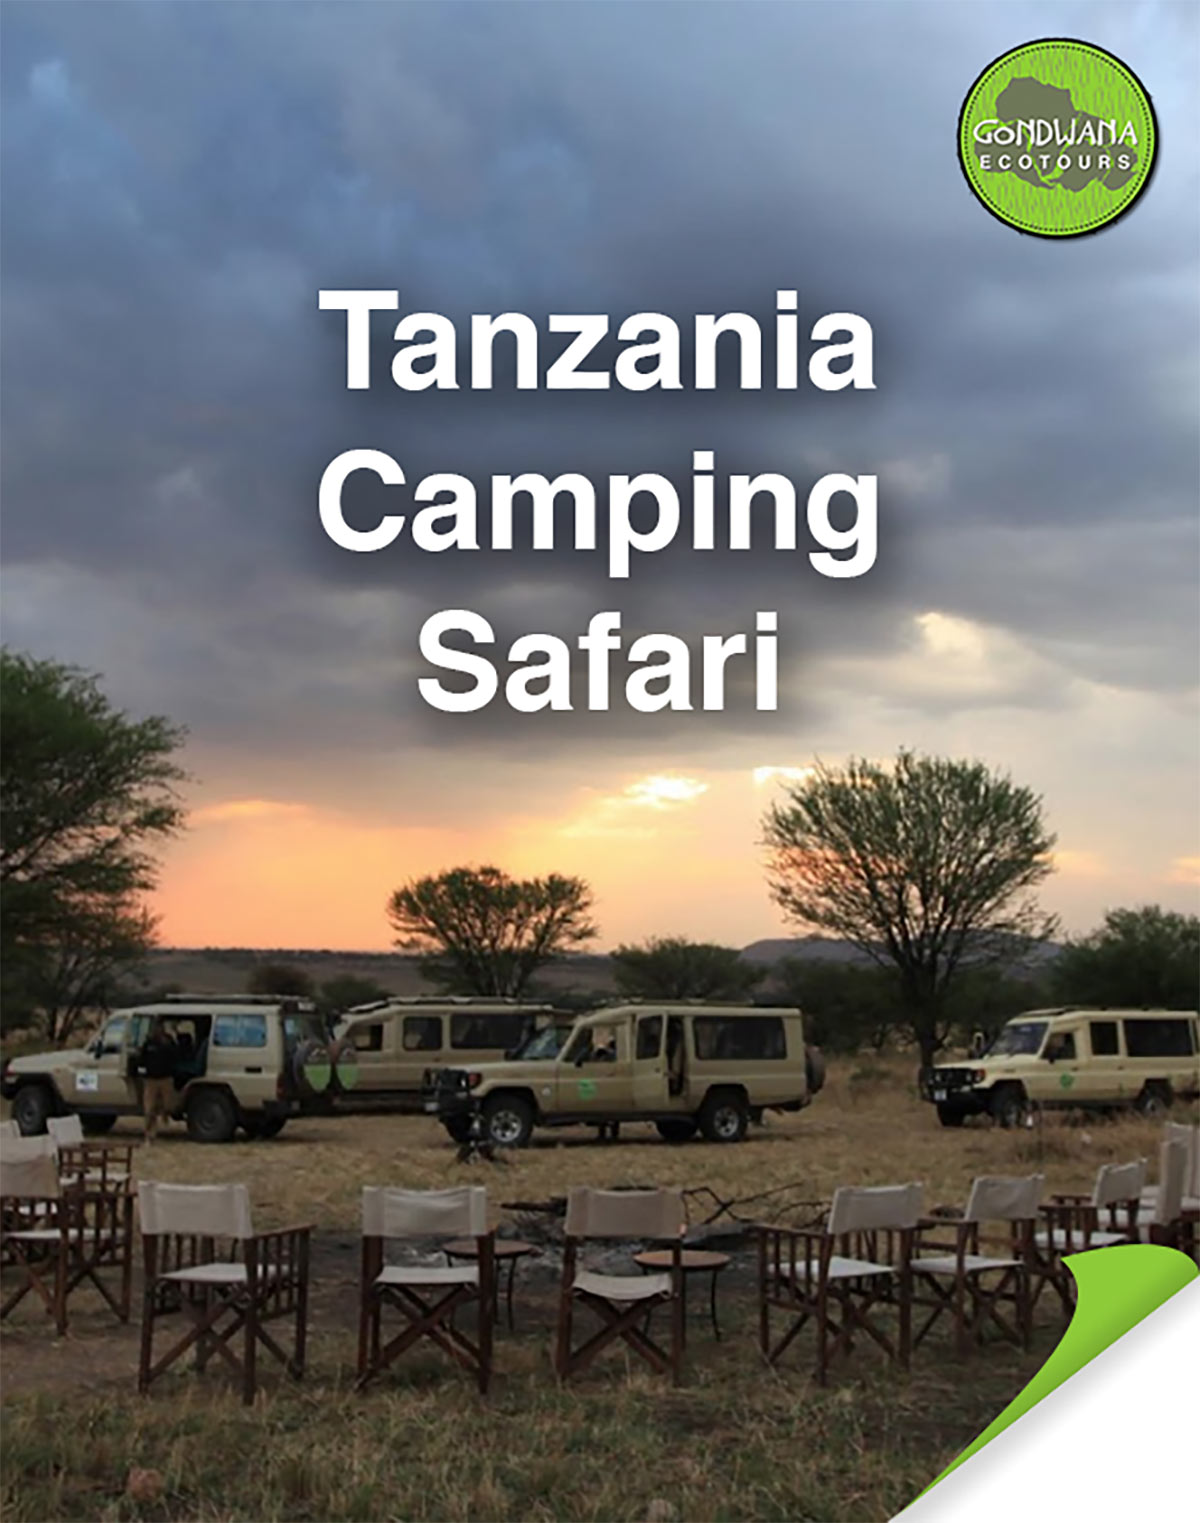 Tanzania Camping